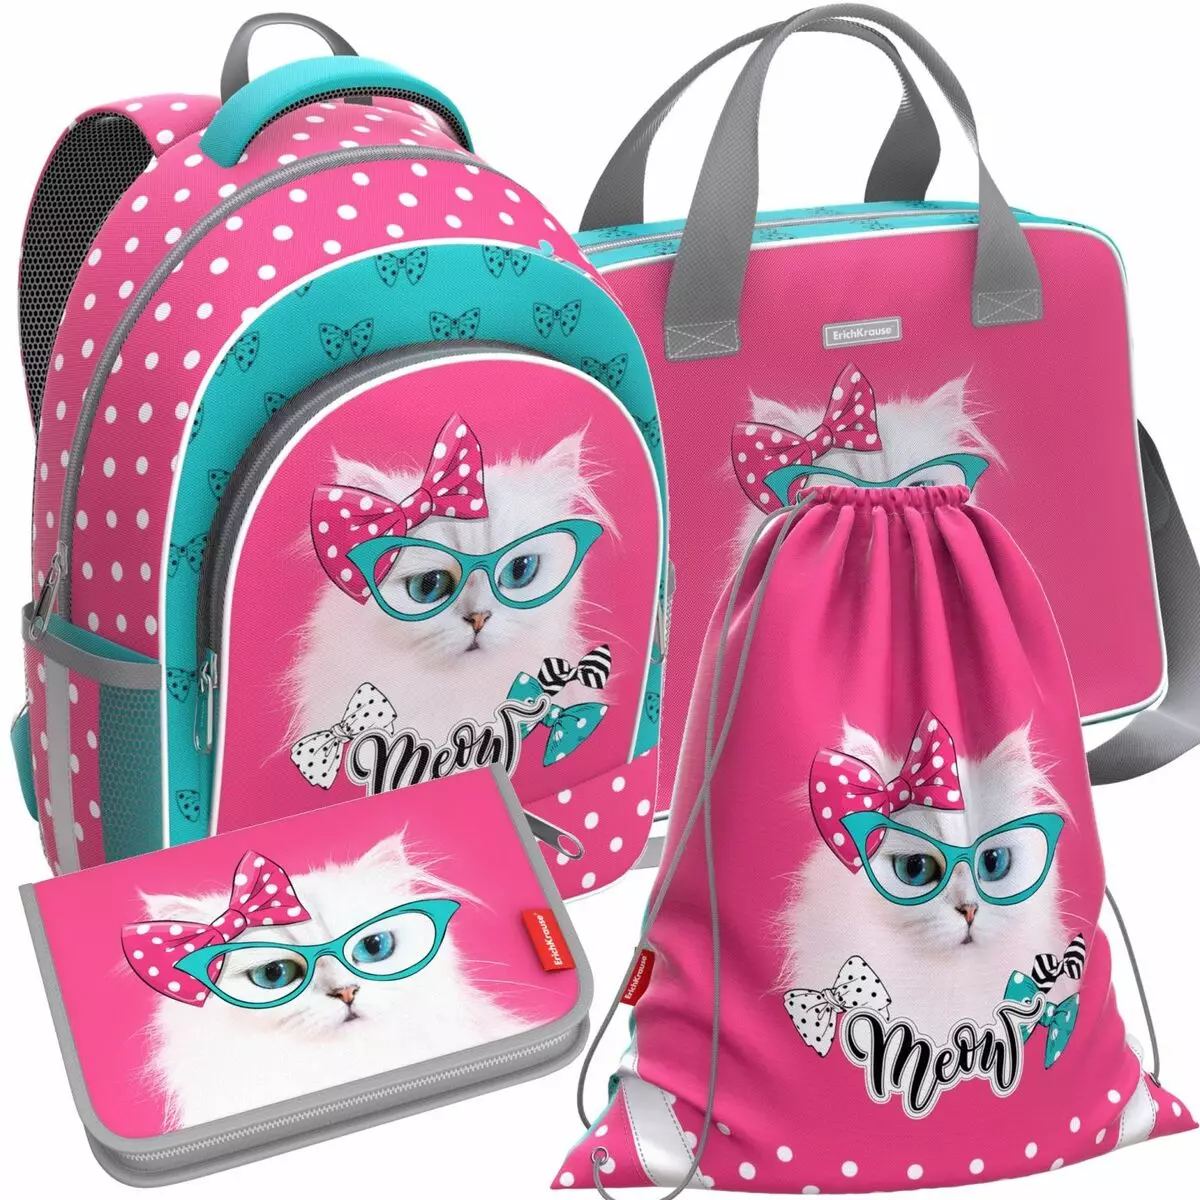 Mochilas para grau 6: Modelos de escola para meninas e meninos, revisão de belas mochilas da moda para adolescentes para a escola 15382_33